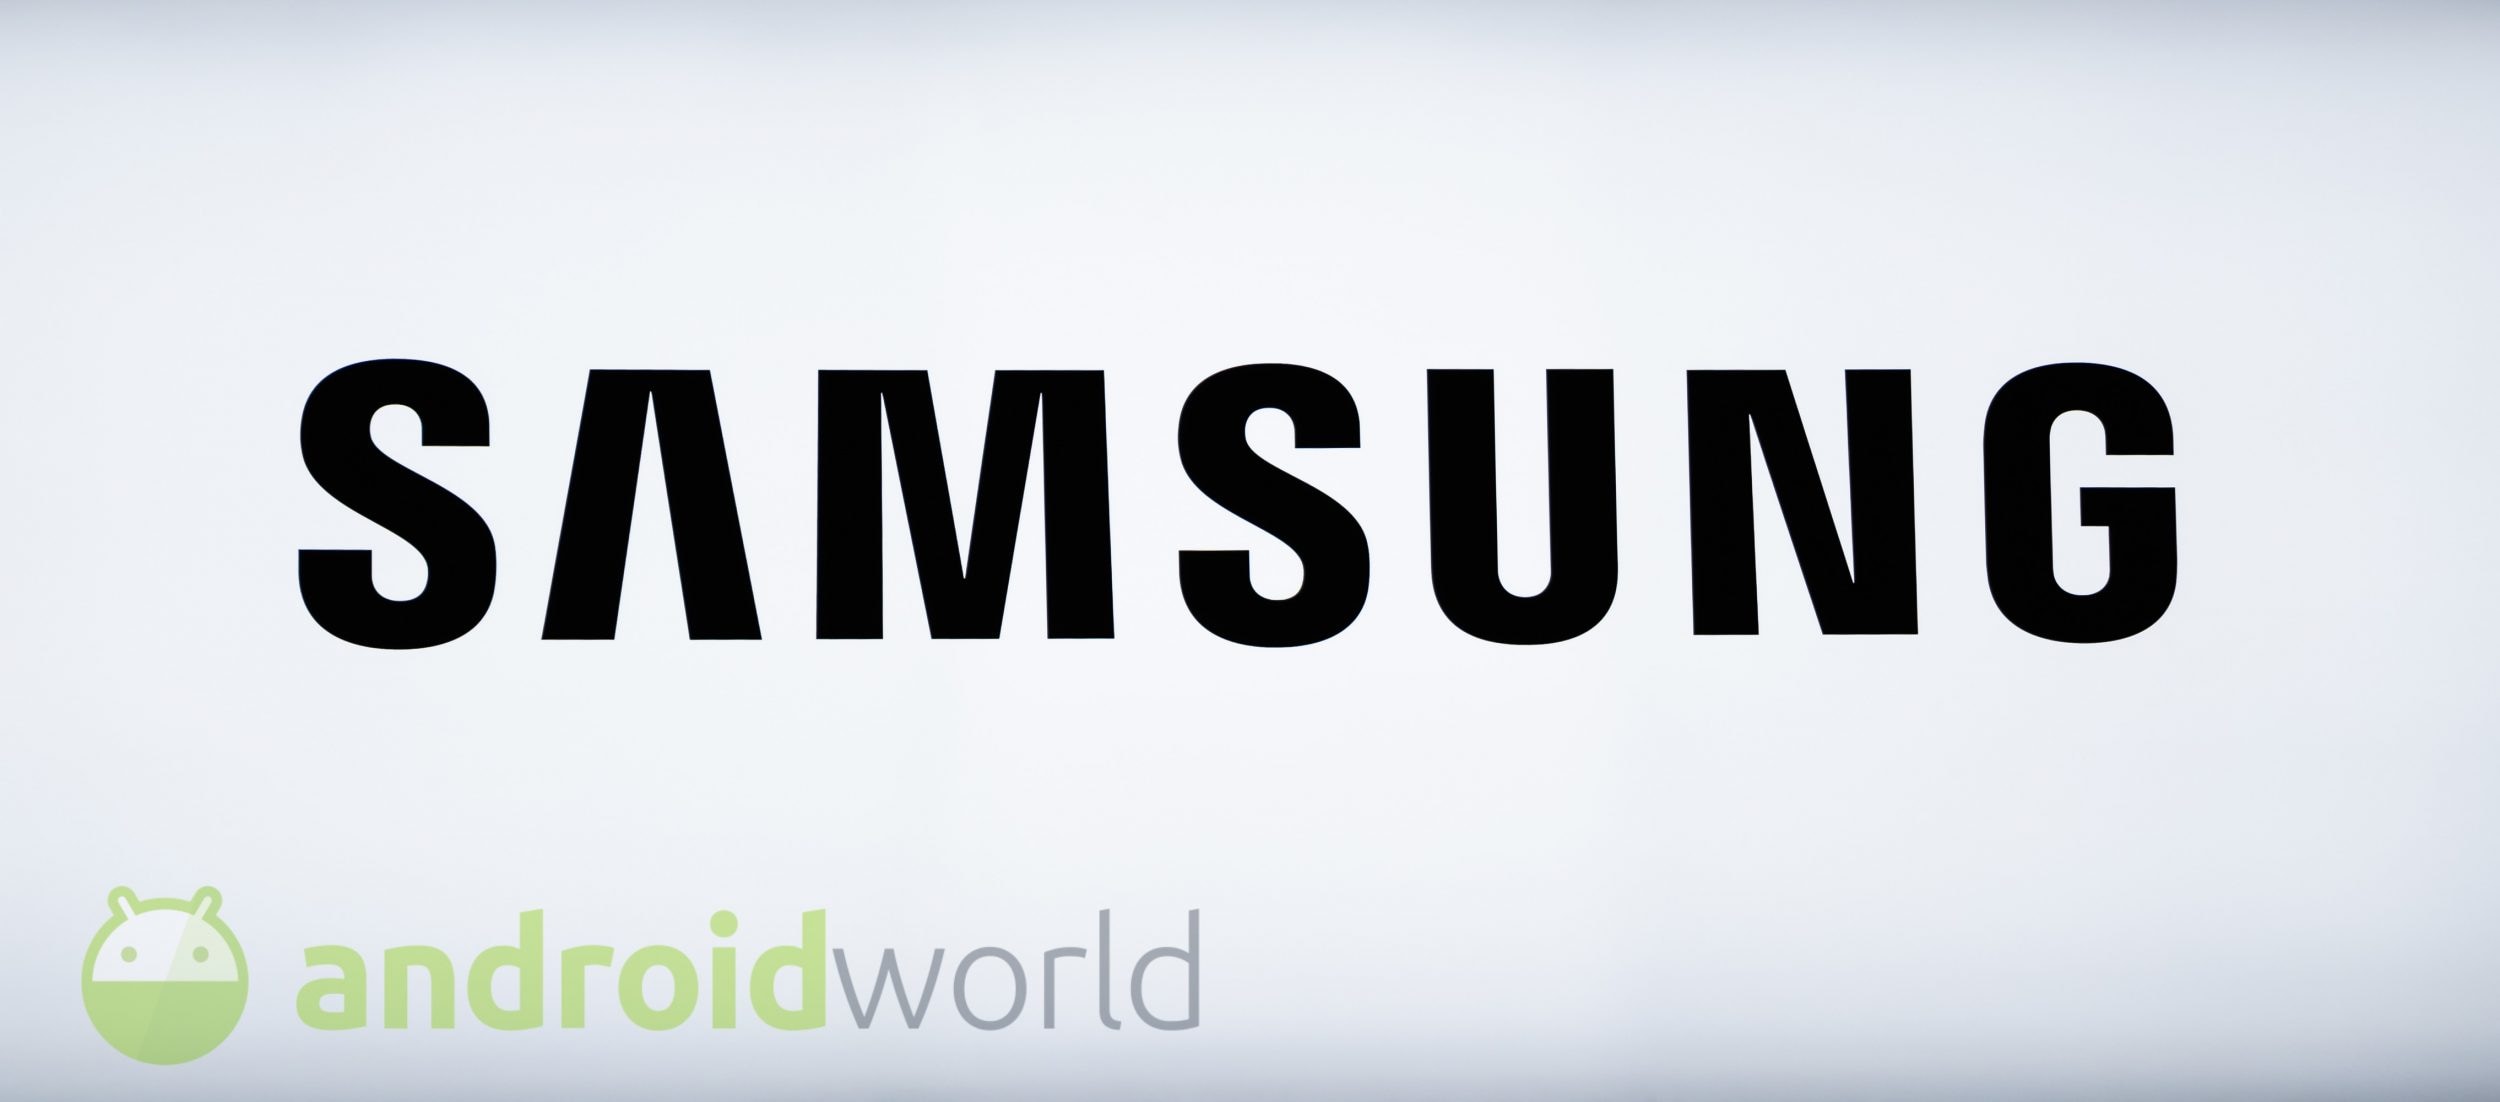 Nel 2020 vedremo un nuovo Samsung Galaxy Note più economico?